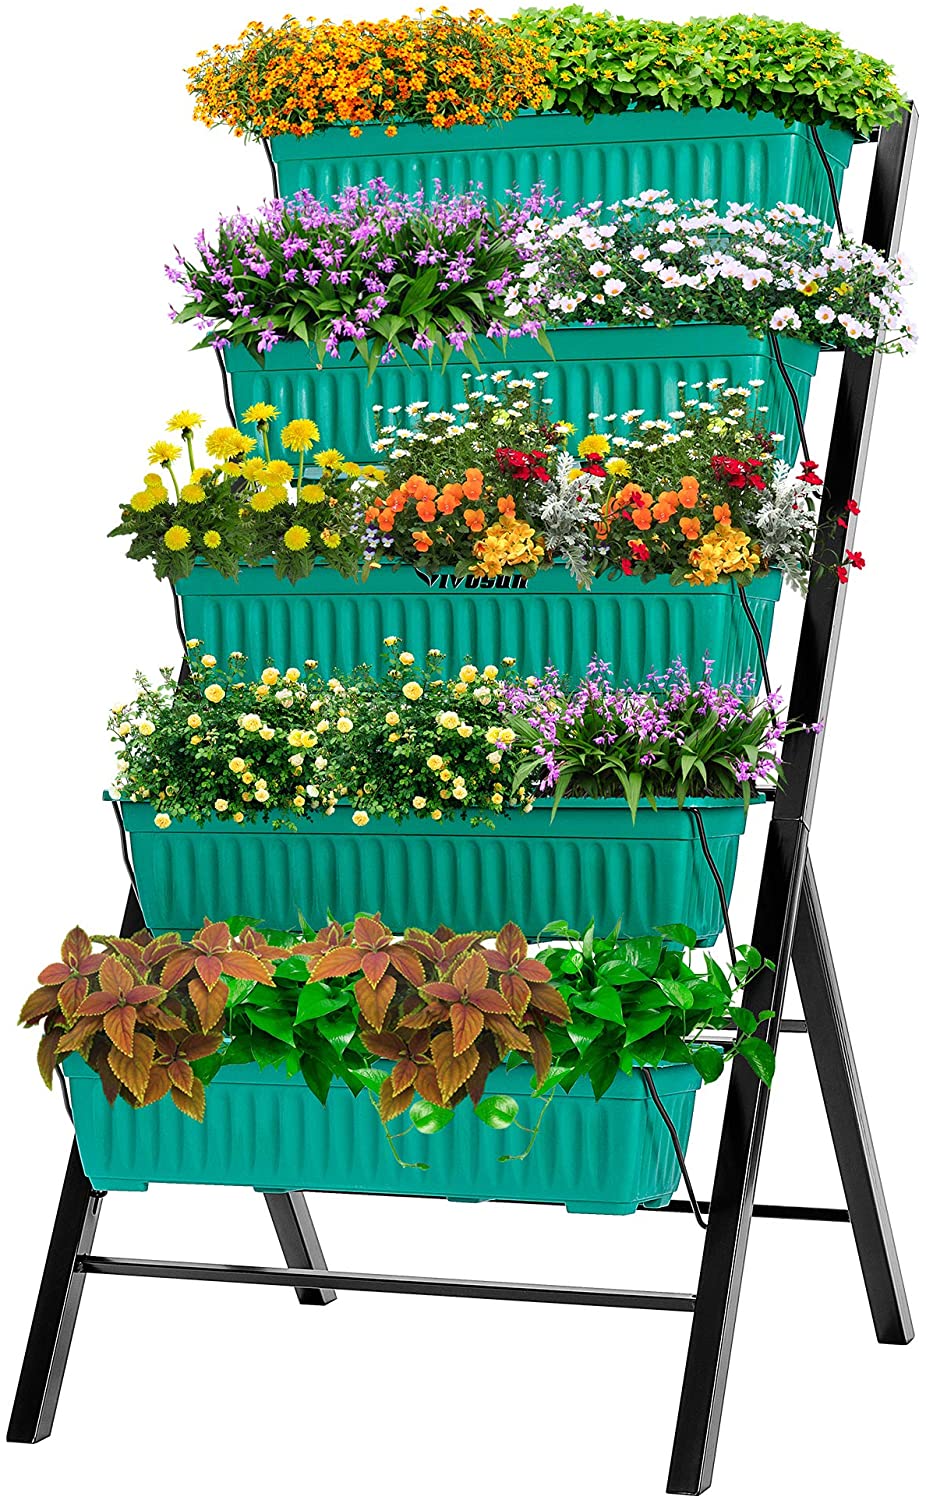 VIVOSUN Elevated Raised Plastic Garden Bed Kit Vegetable Flower Planter Grow Box 